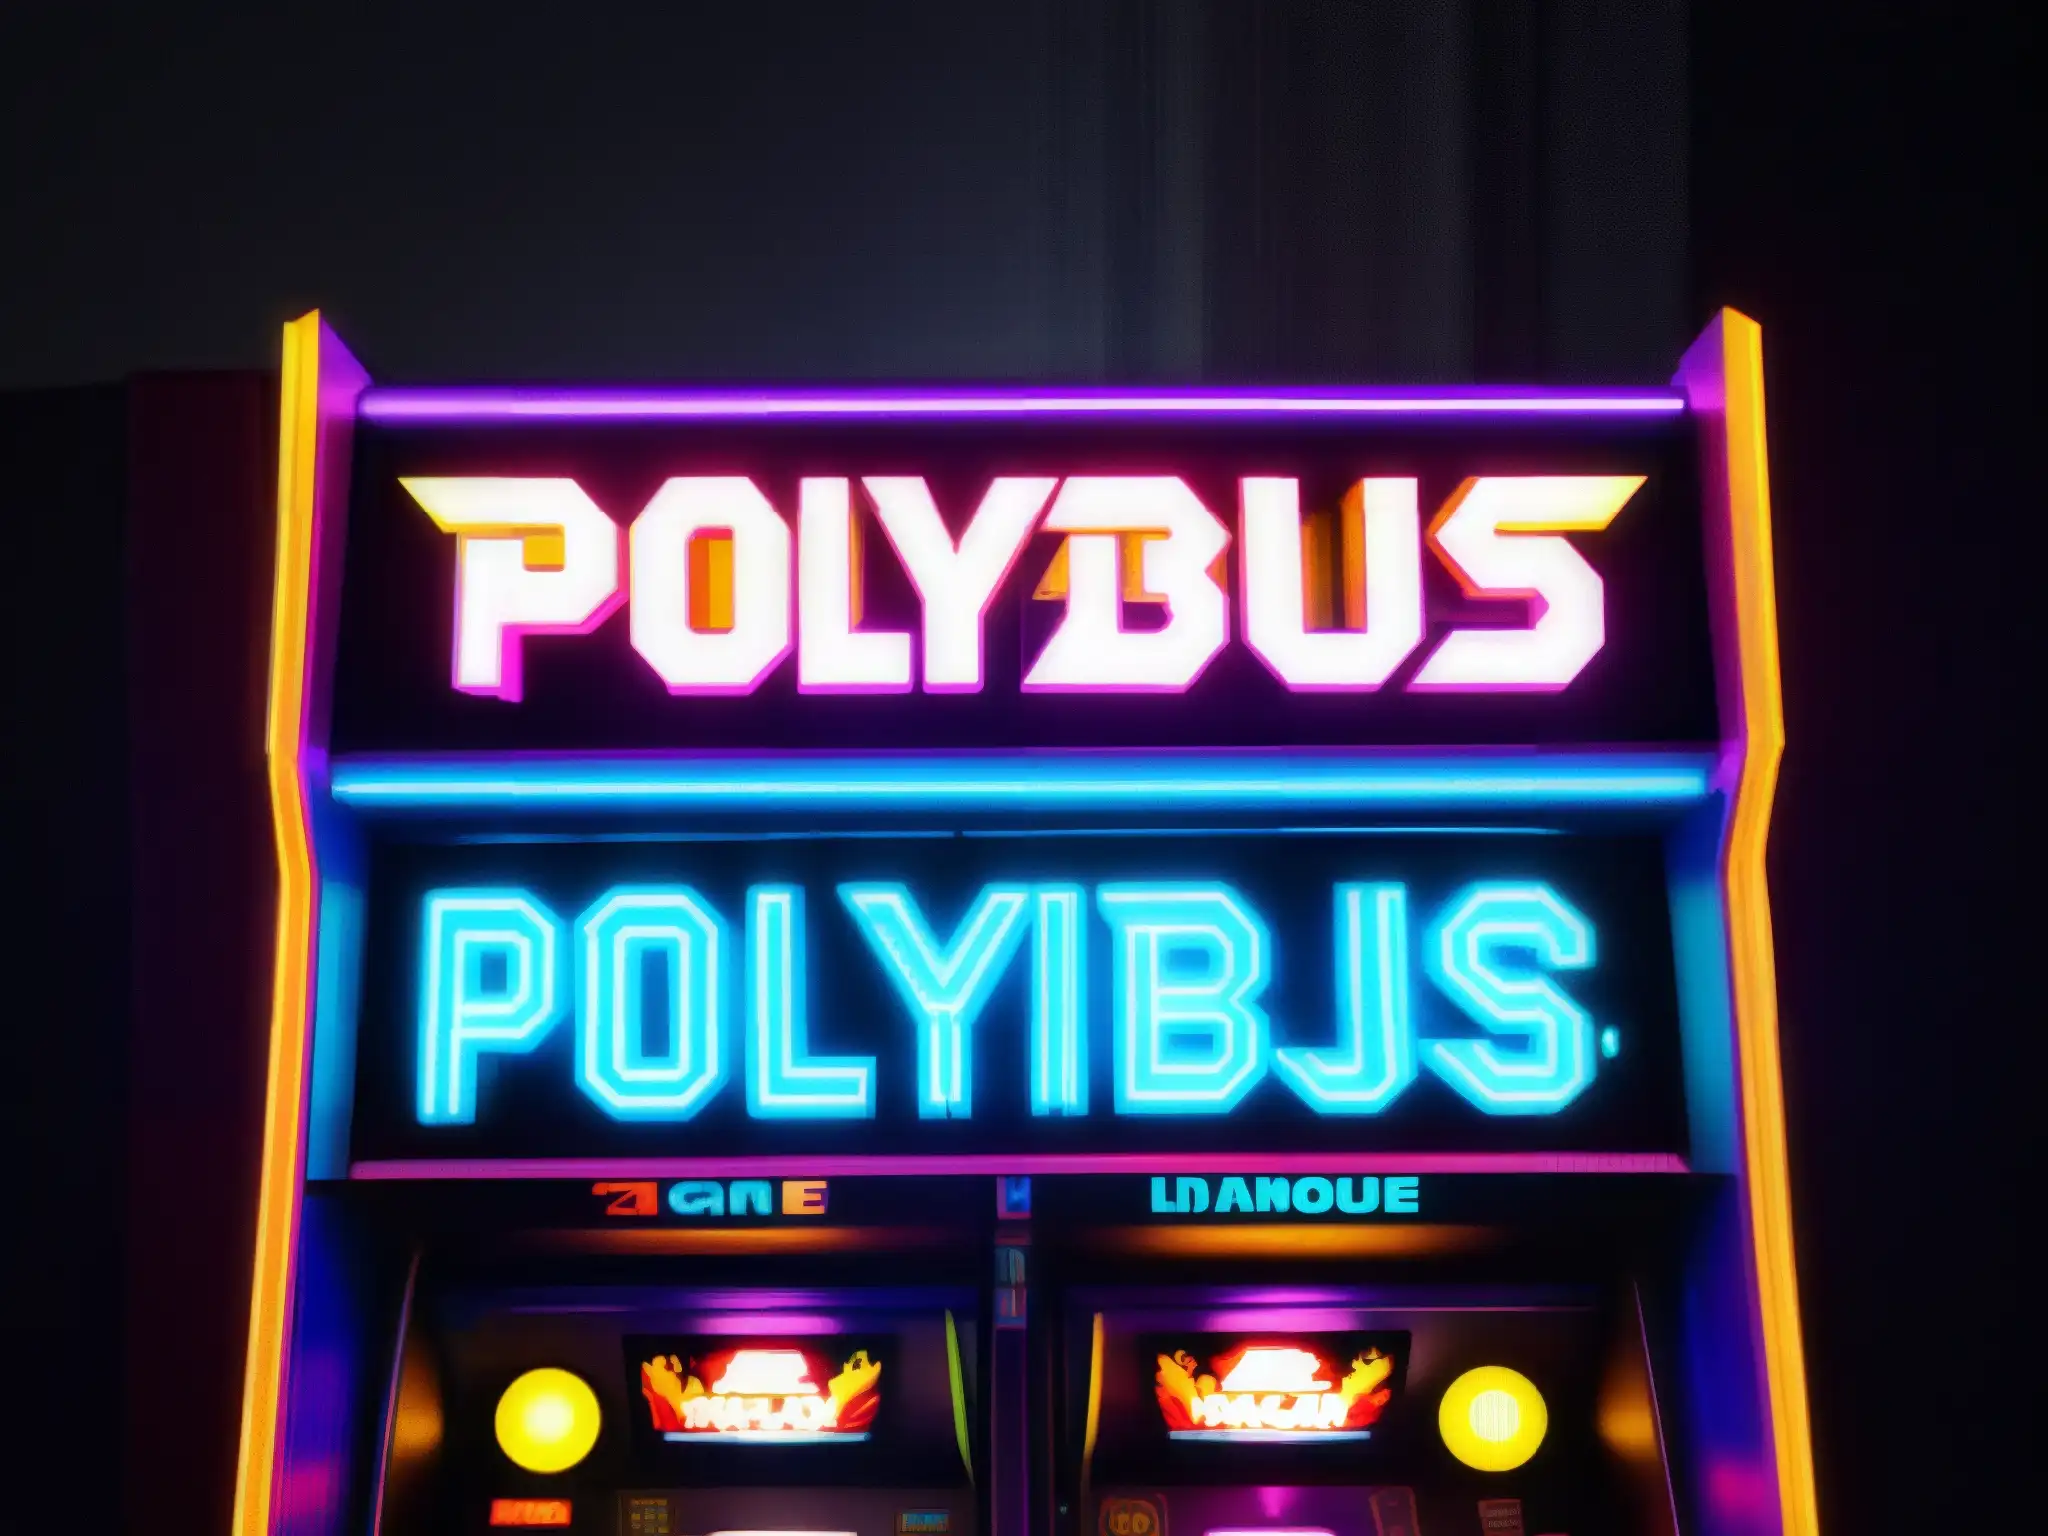 Un misterioso arcade vintage 'Polybius' iluminado, con atmósfera enigmática